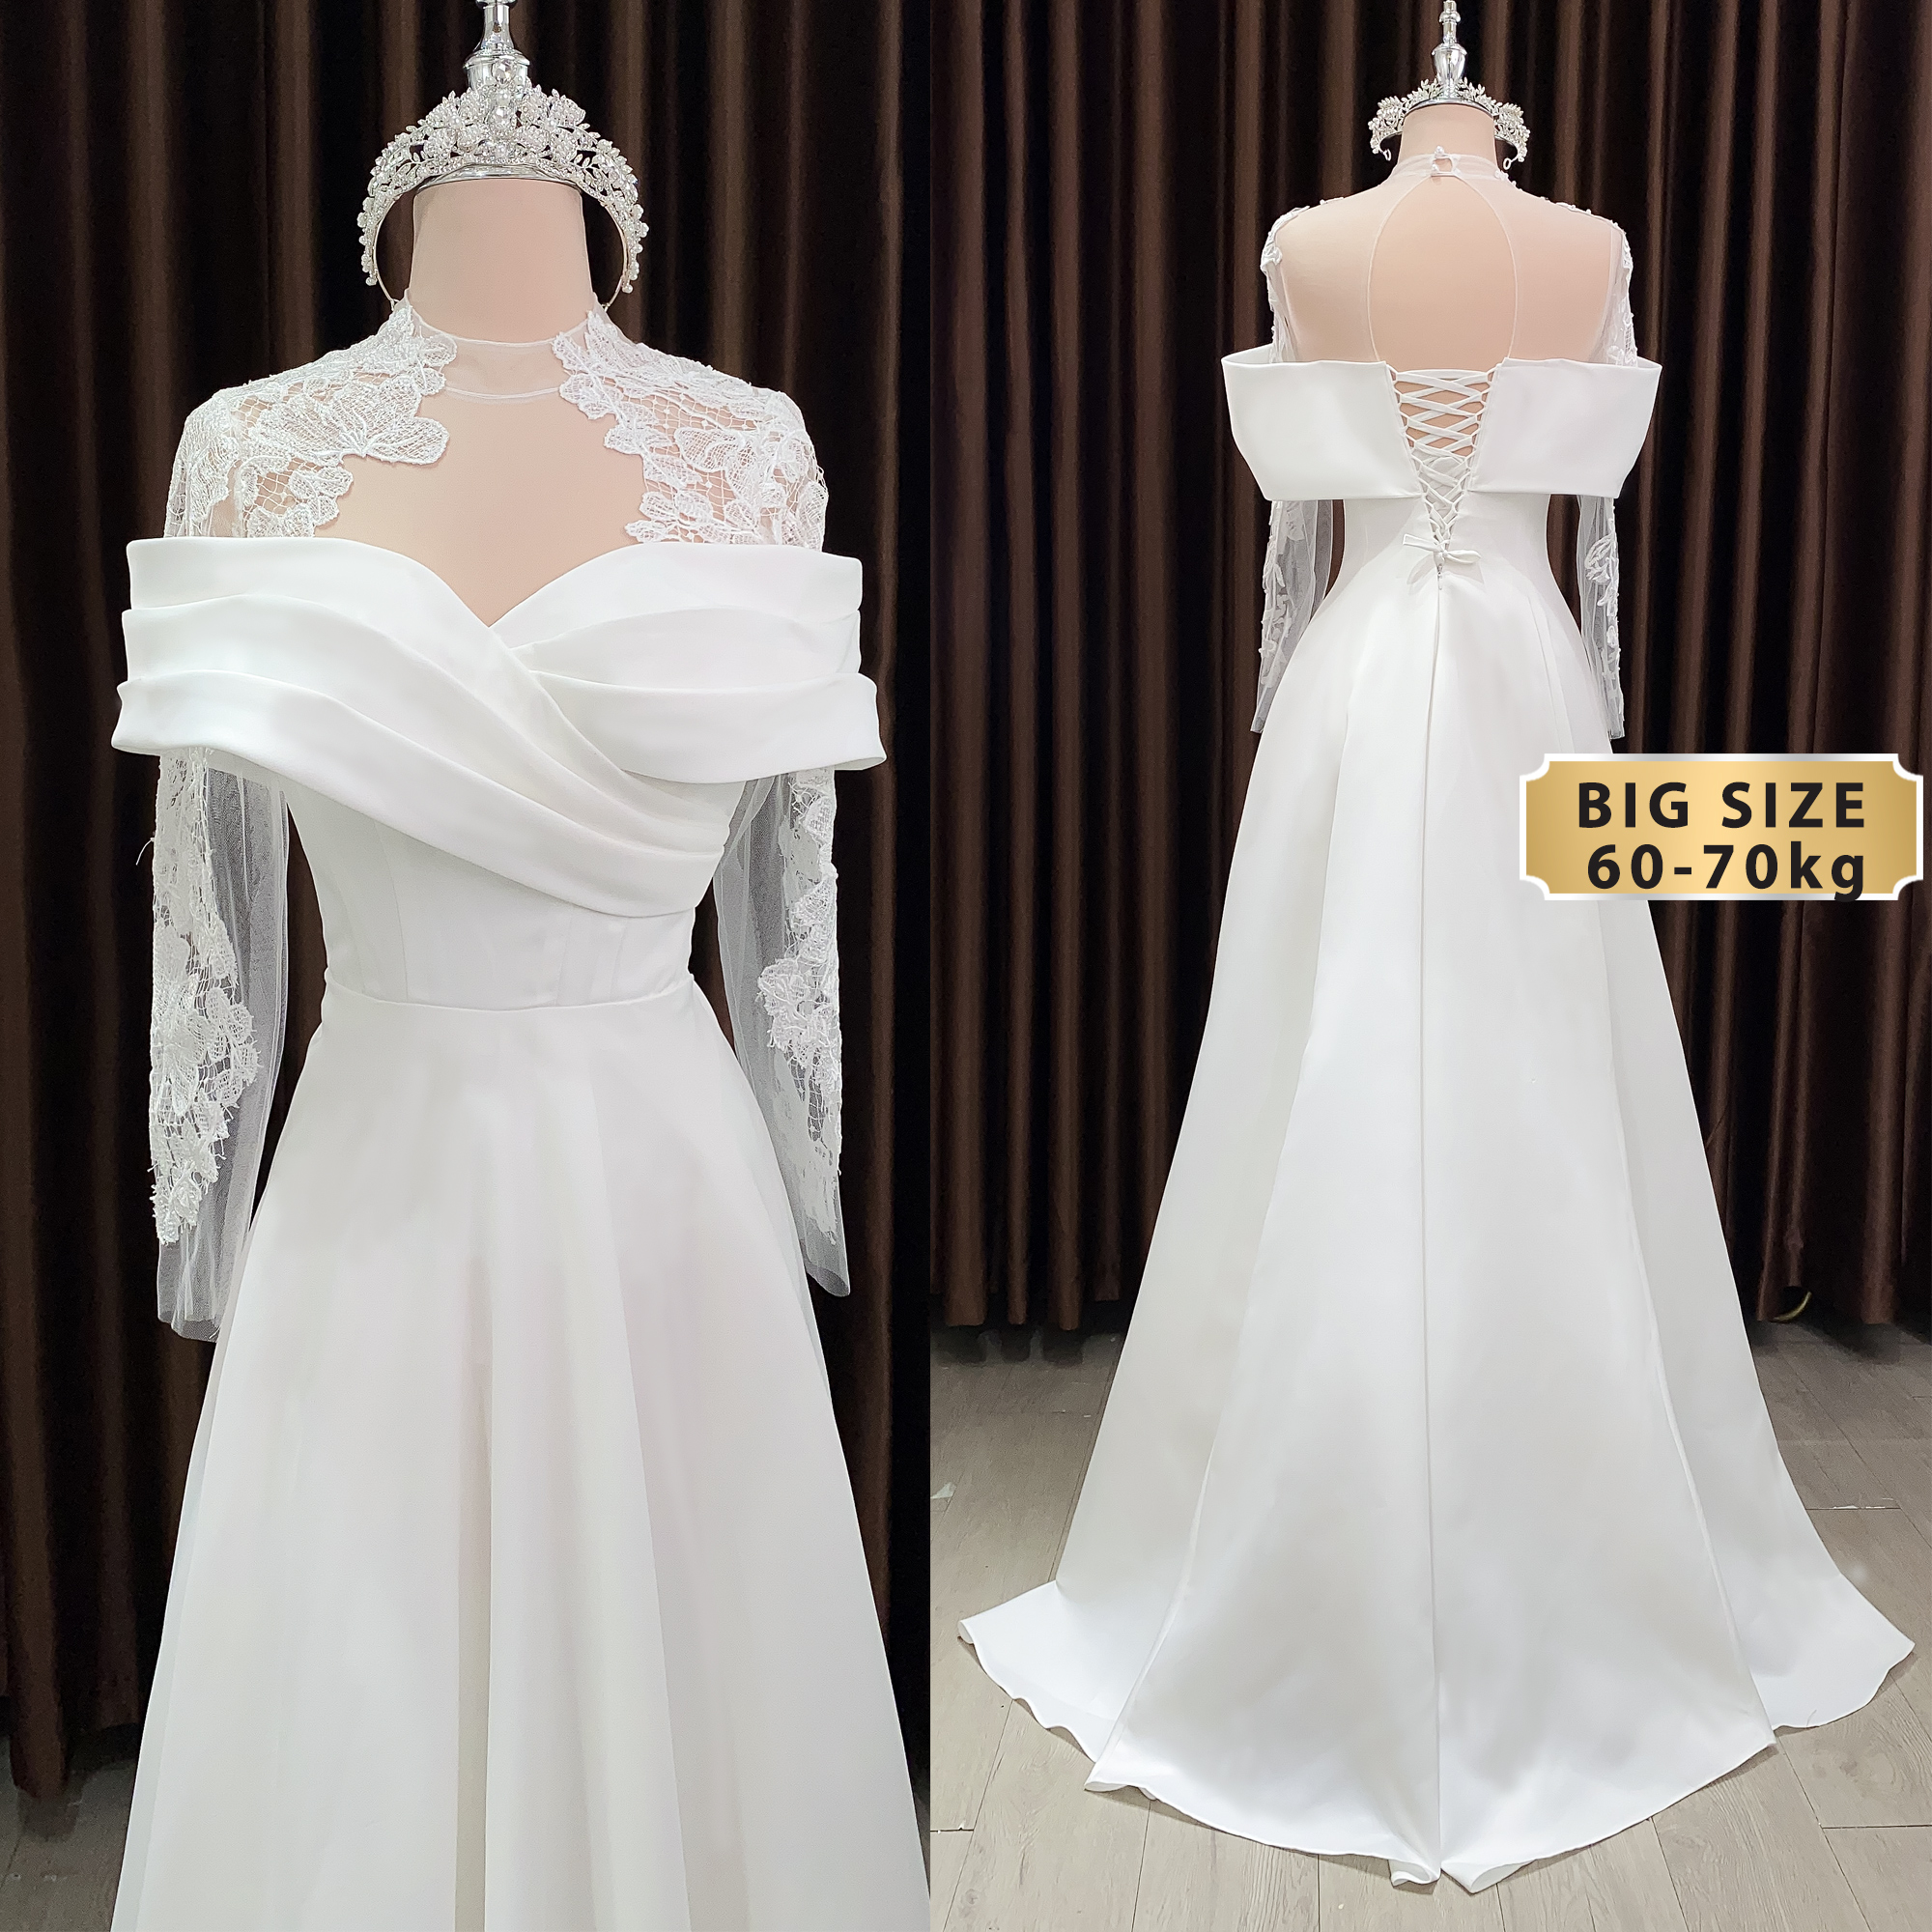 Tips chọn váy cưới sang trọng, ấm áp cho các hôn lễ Bống Maxishop